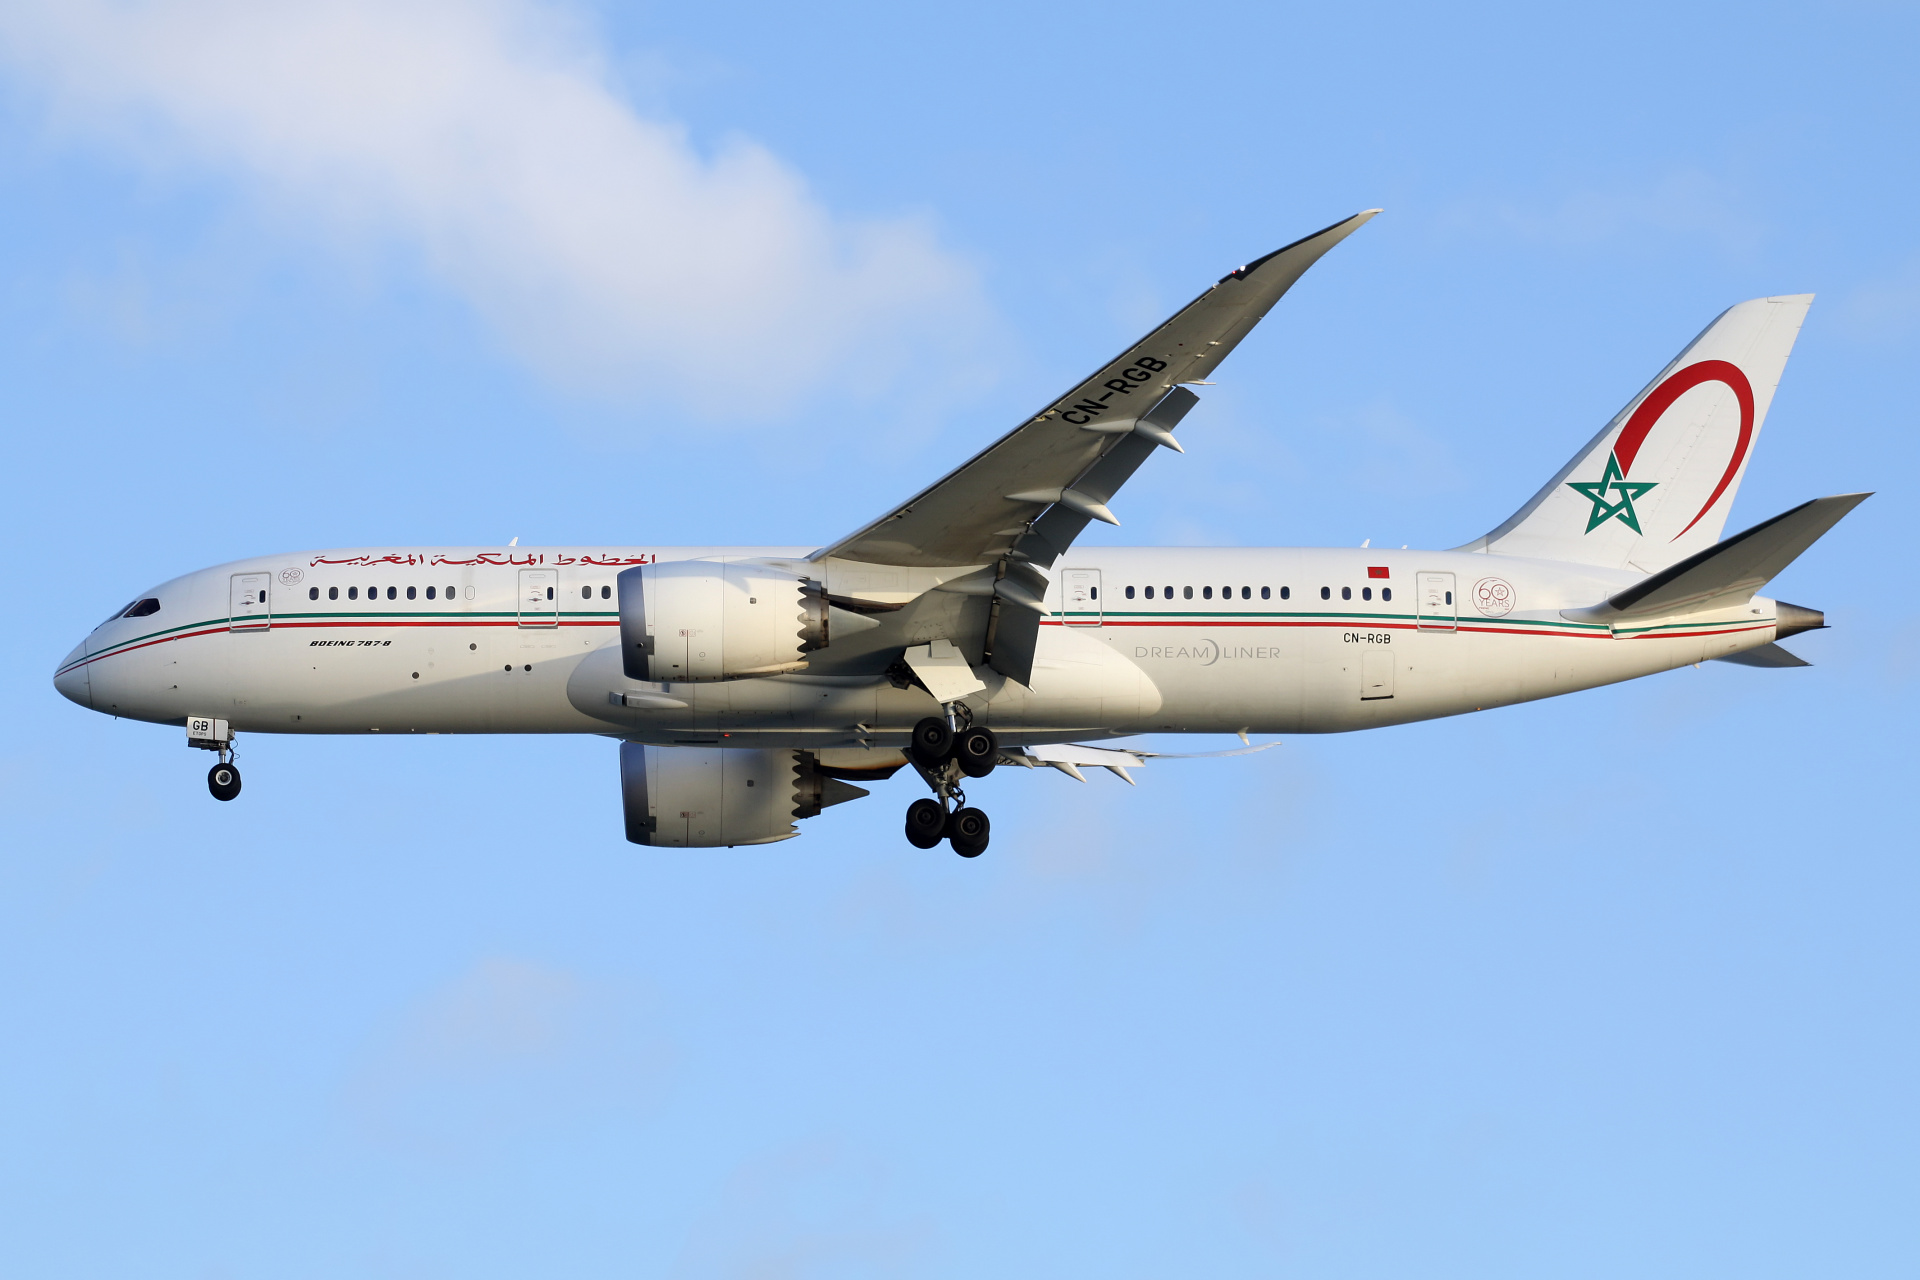 CN-RGB, Royal Air Maroc (Samoloty » Port Lotniczy im. Atatürka w Stambule » Boeing 787-8 Dreamliner)